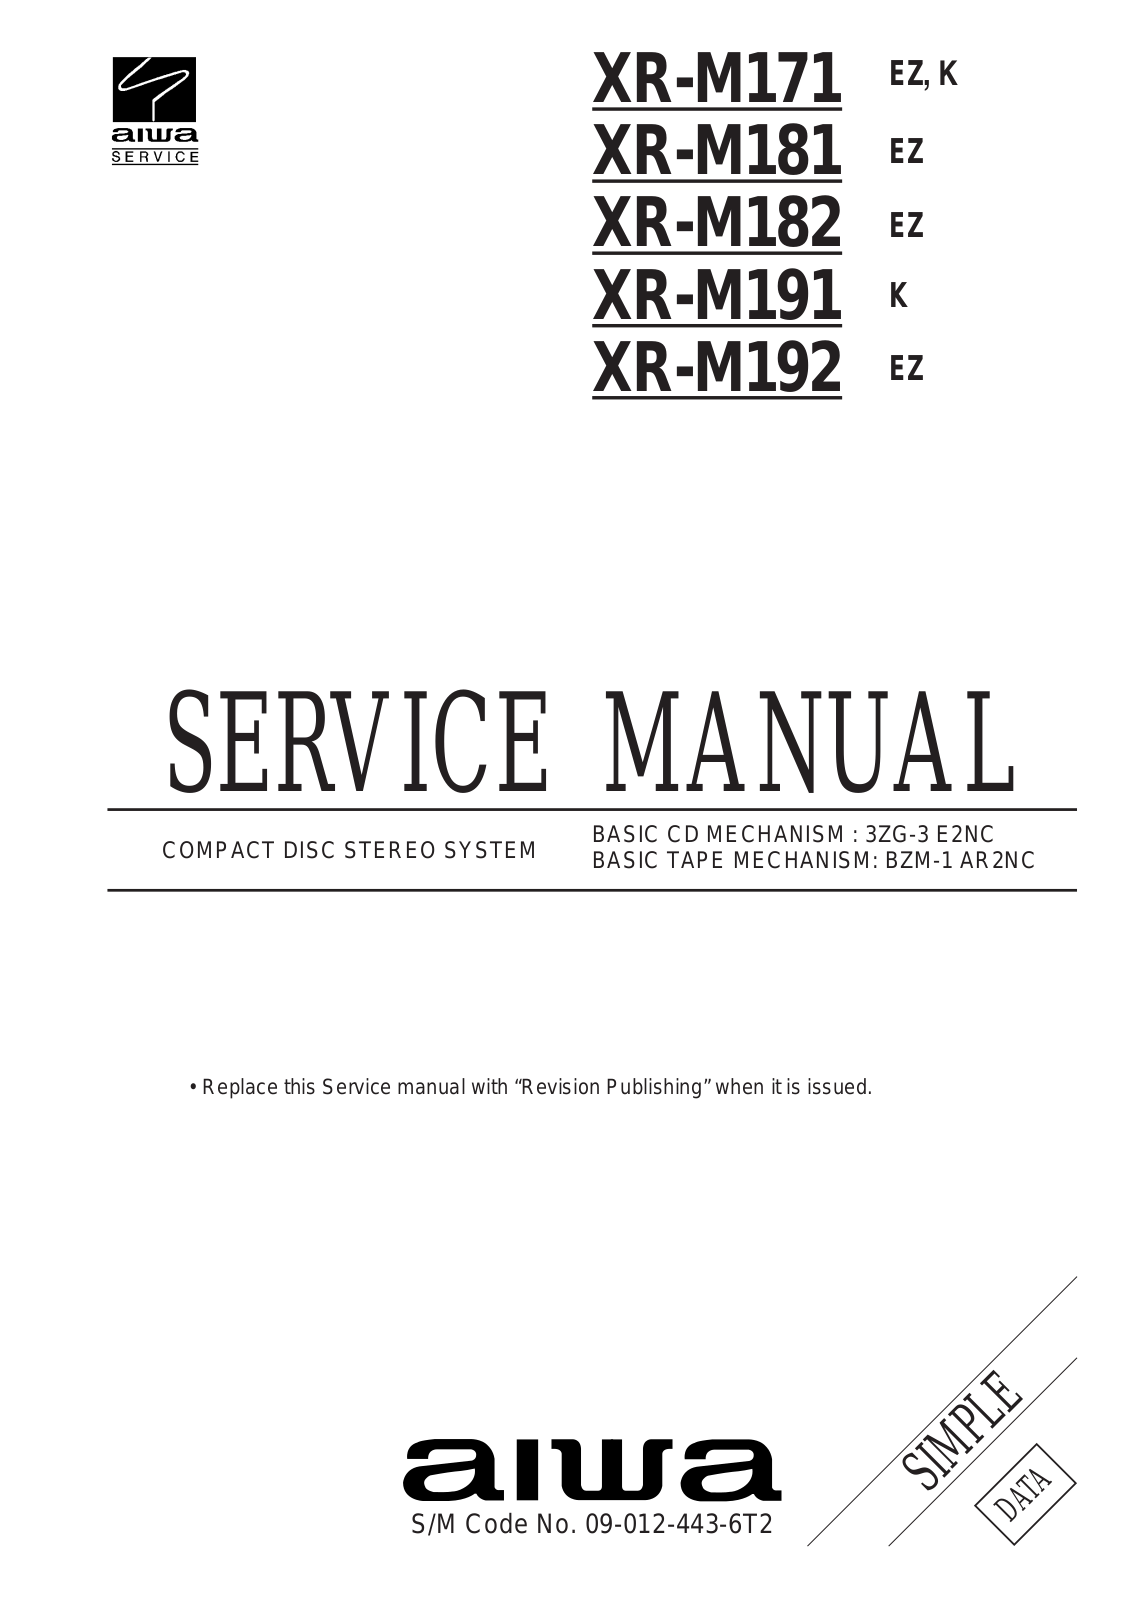 Aiwa XR-M171, XR-M181, XR-M182, XR-M191, XR-M192 Service Manual